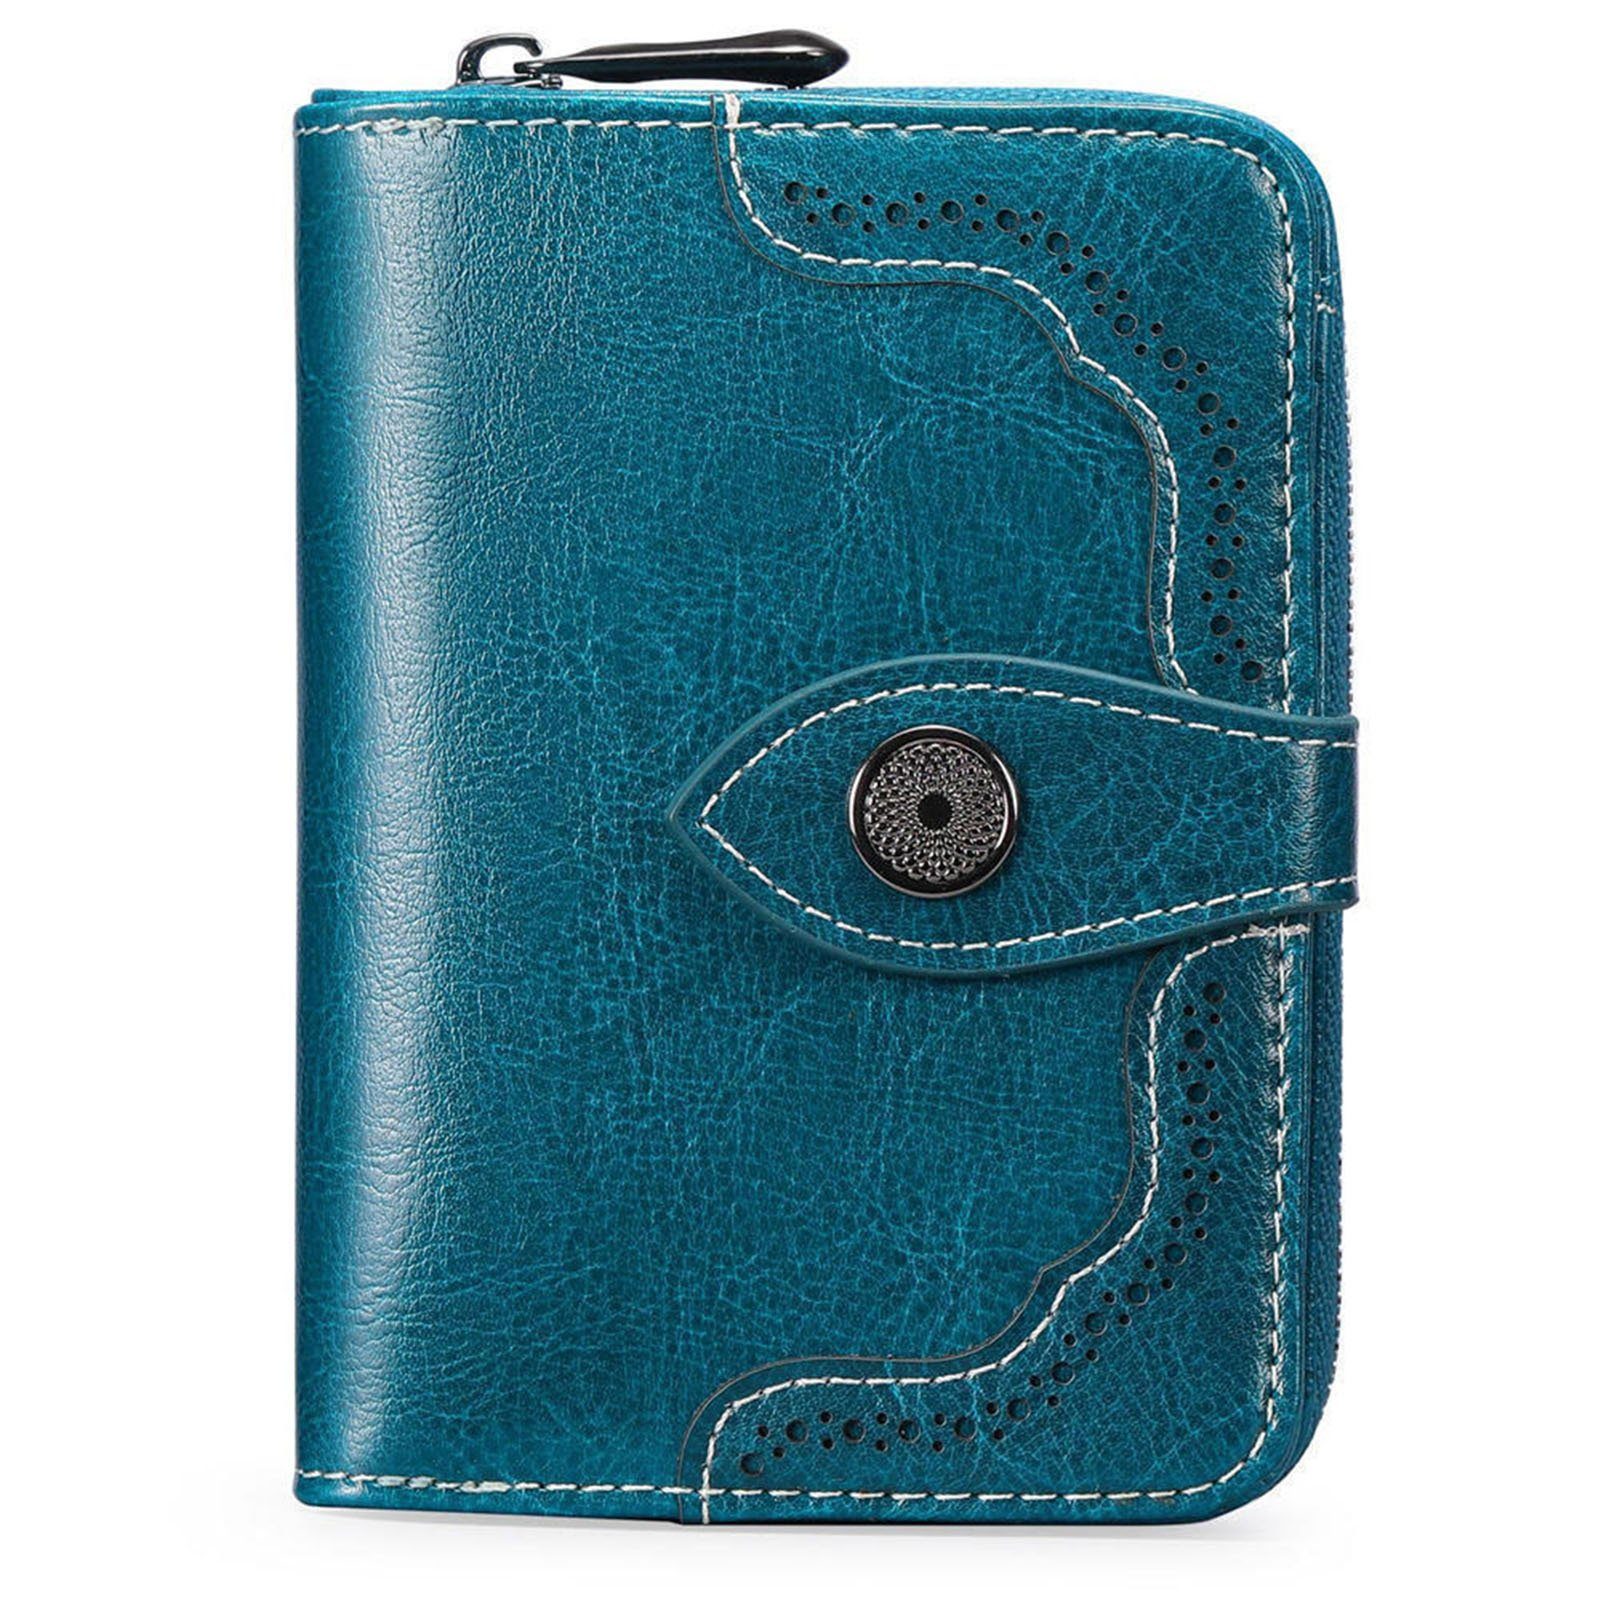 Portemonnaie, Herren Multifunktionale Geldbeutel Vintage Blusmart Geldbörse, Geldbörse gem blue